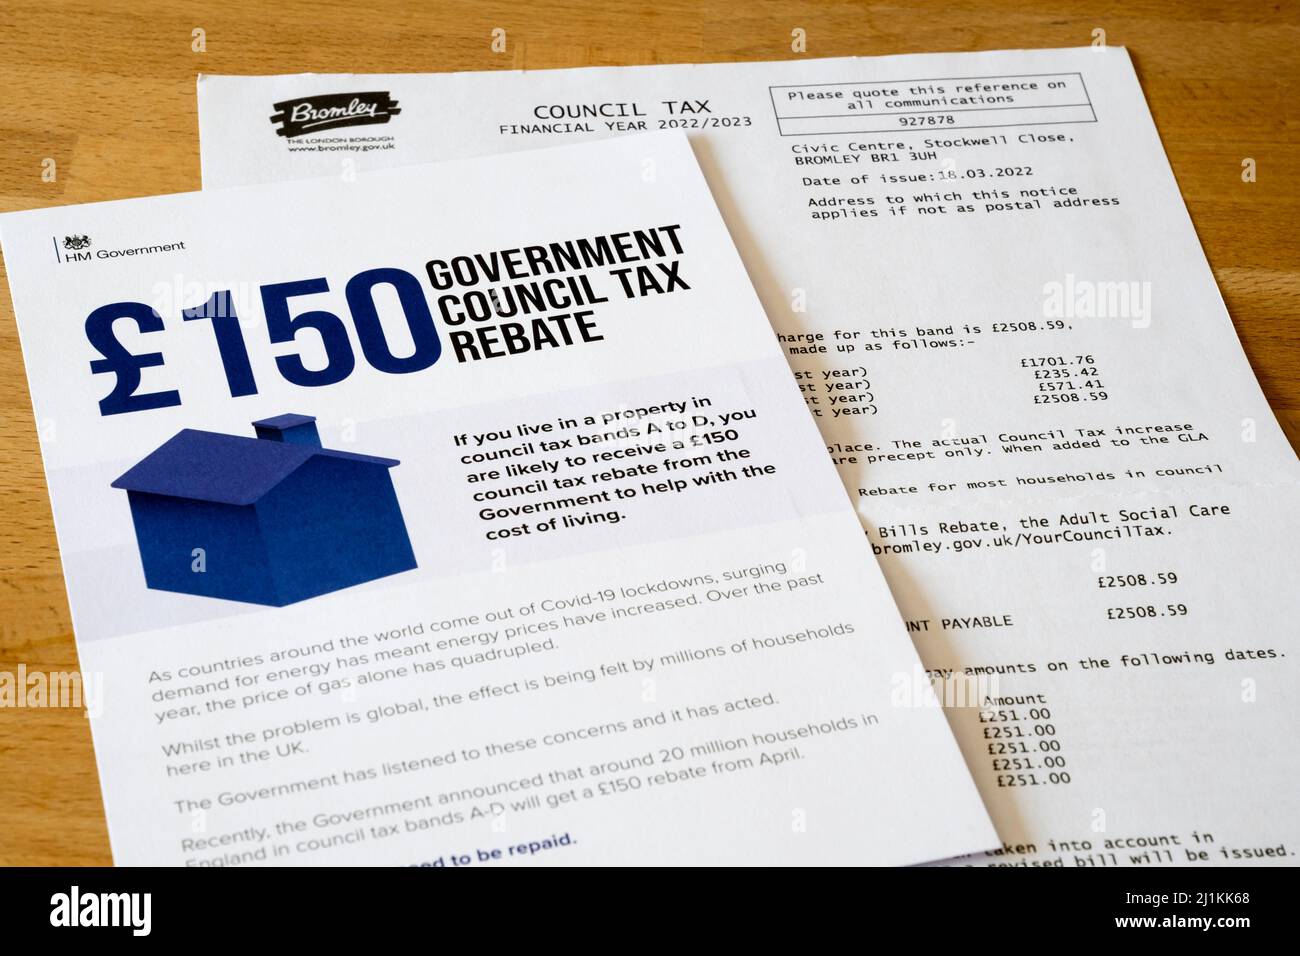 Steuererklärung des Rates zusammen mit einer Broschüre der Regierung über einen Steuernachlass des Rates. NB: Personenbezogene Daten anonymisiert. Stockfoto